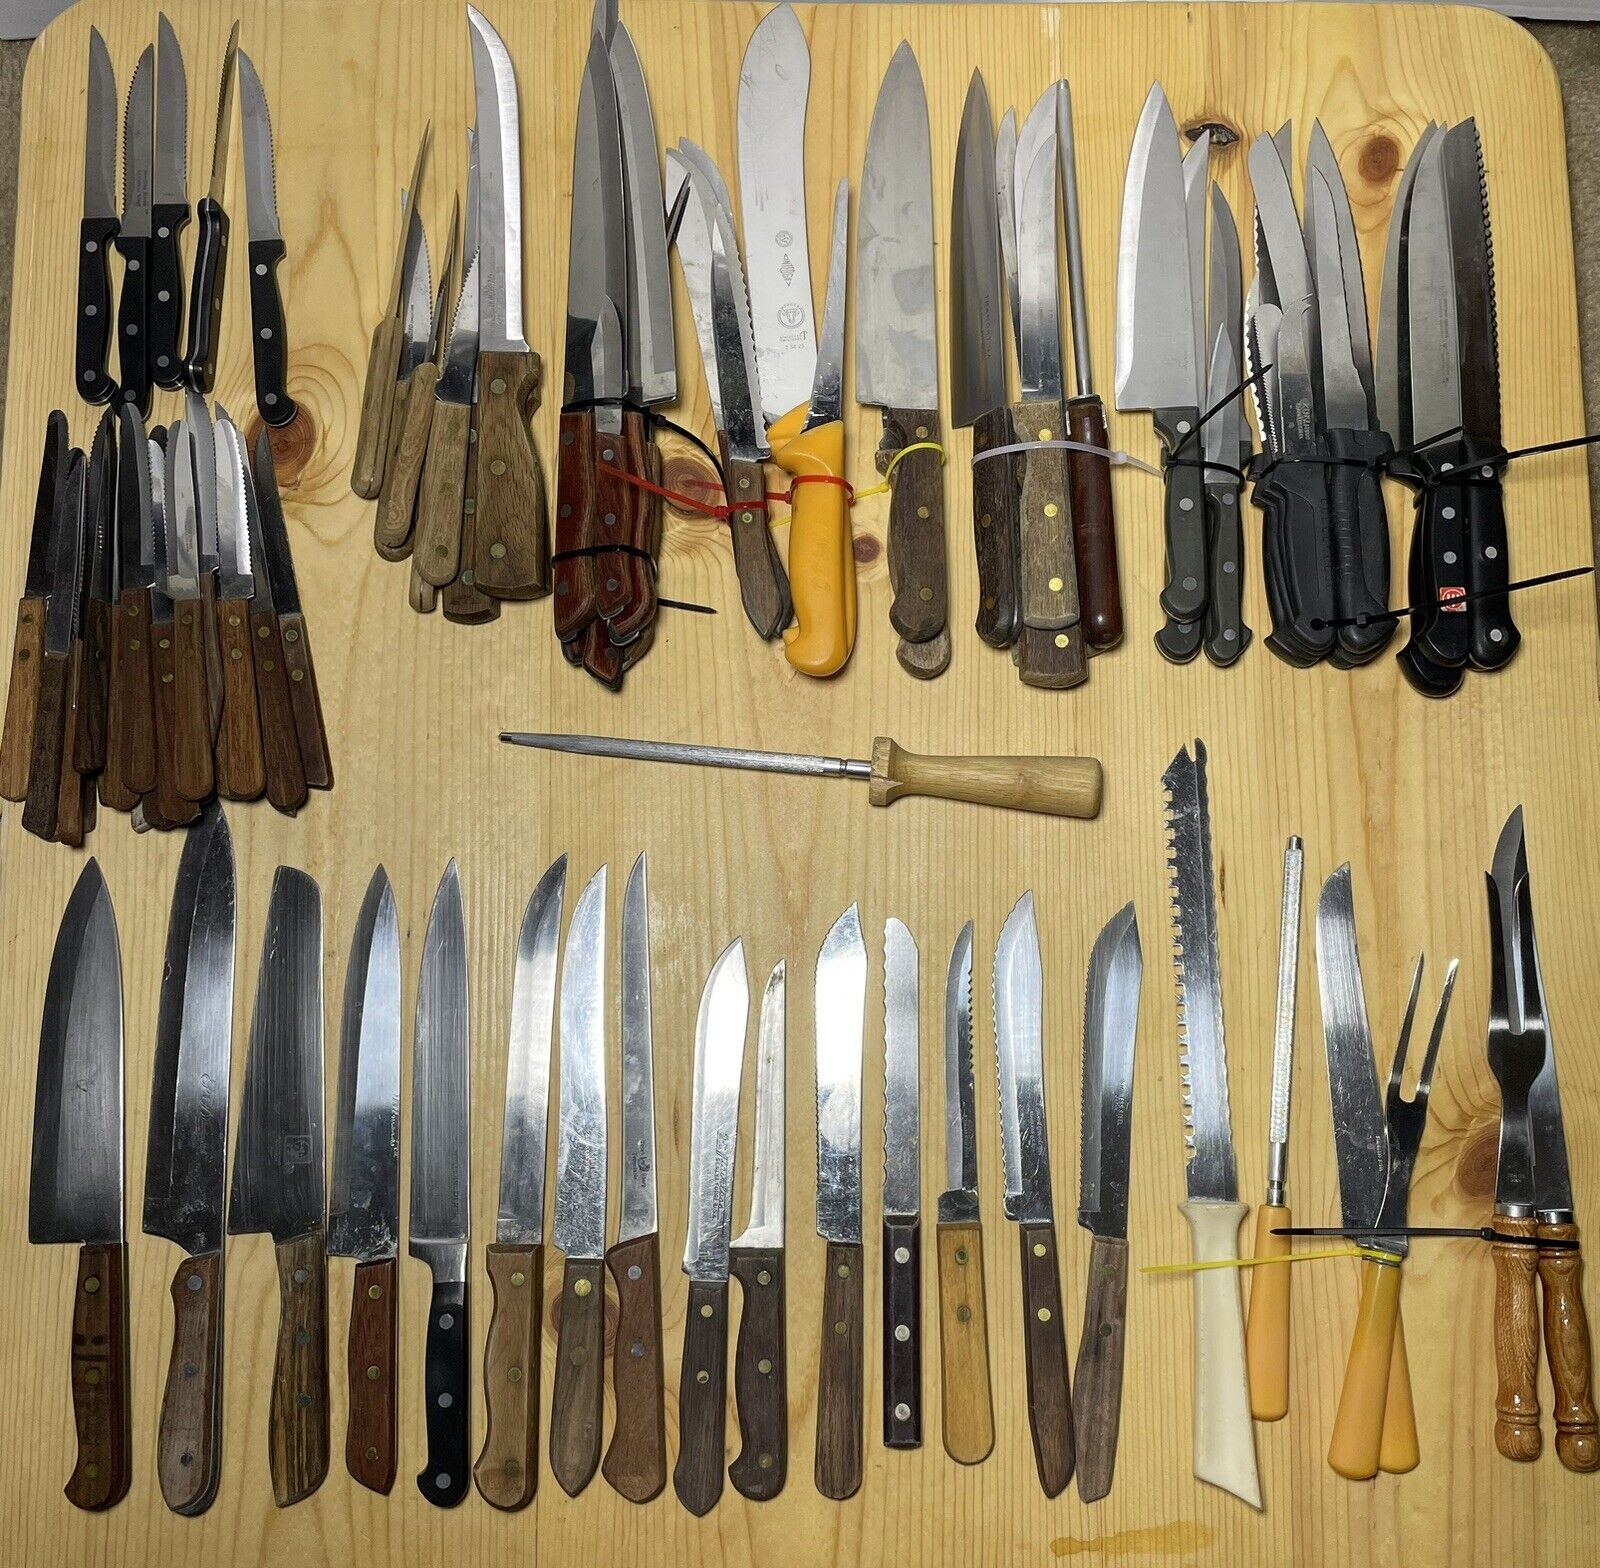 Wholesale Bulk Lot of 91 Vintage, Antique, + Steel Kitchen Butcher Knife Knives